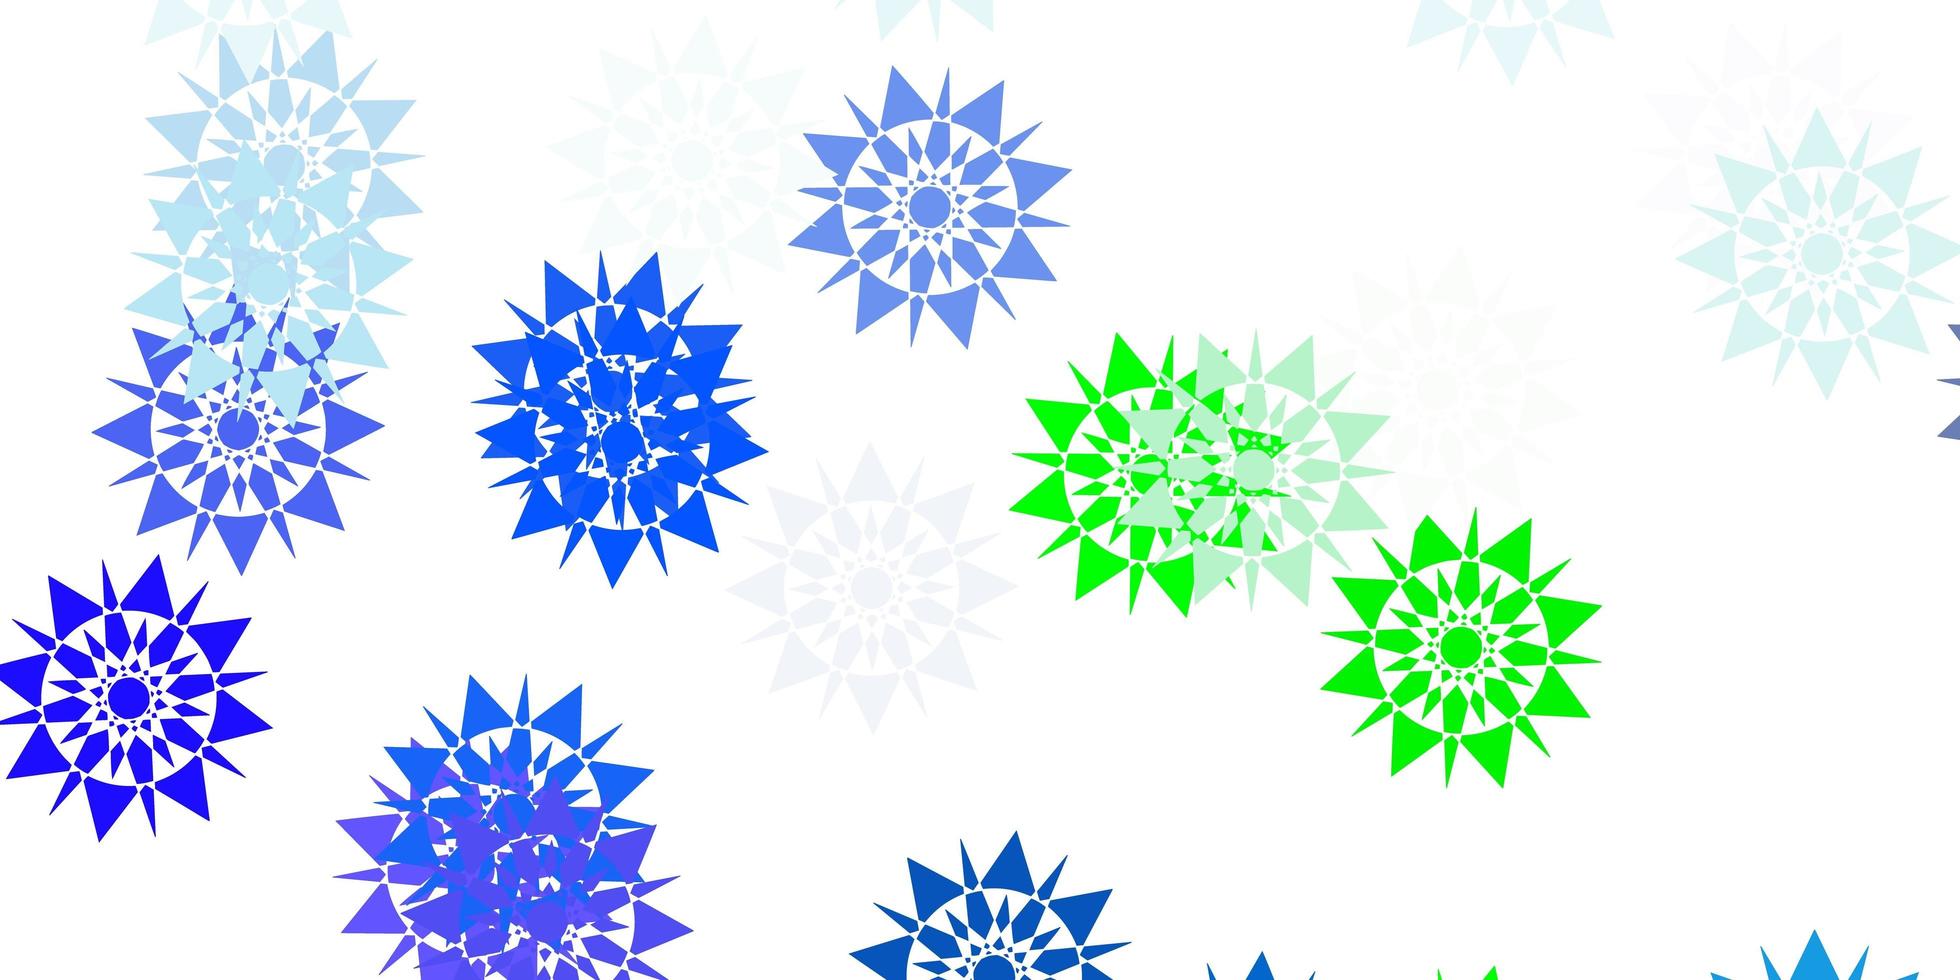 hellblaues grünes Vektorlayout mit schönen Schneeflocken vektor